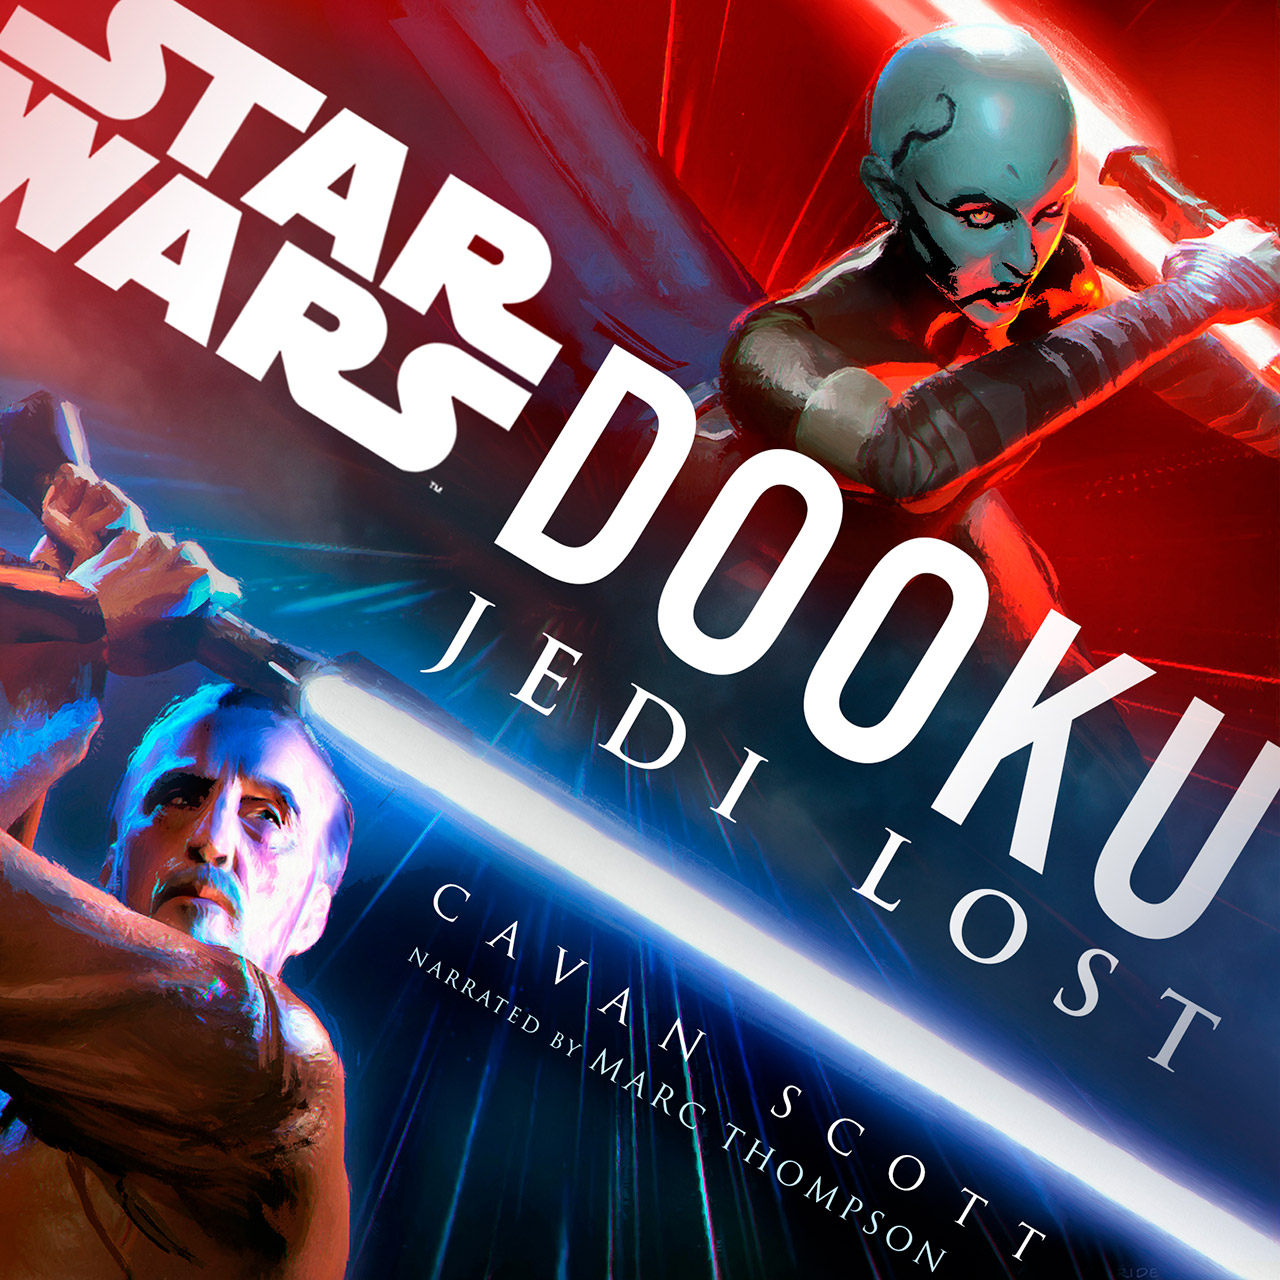 Star Wars Dooku Jedi Lost